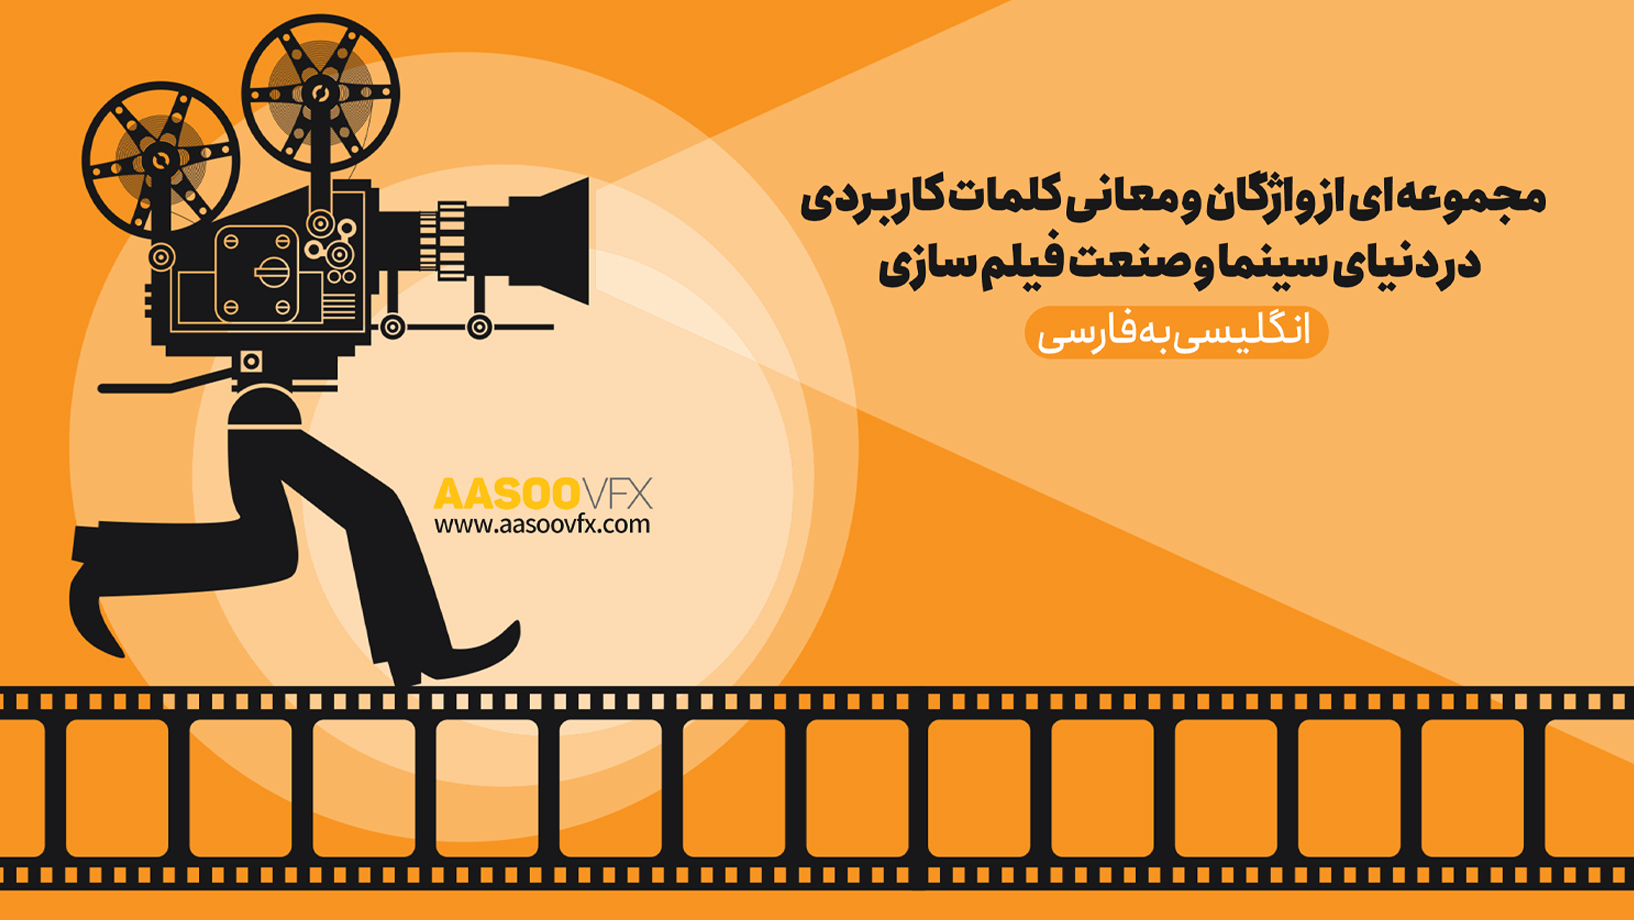 اصطلاحات فیلم سازی و سینما انگلیسی به فارسی